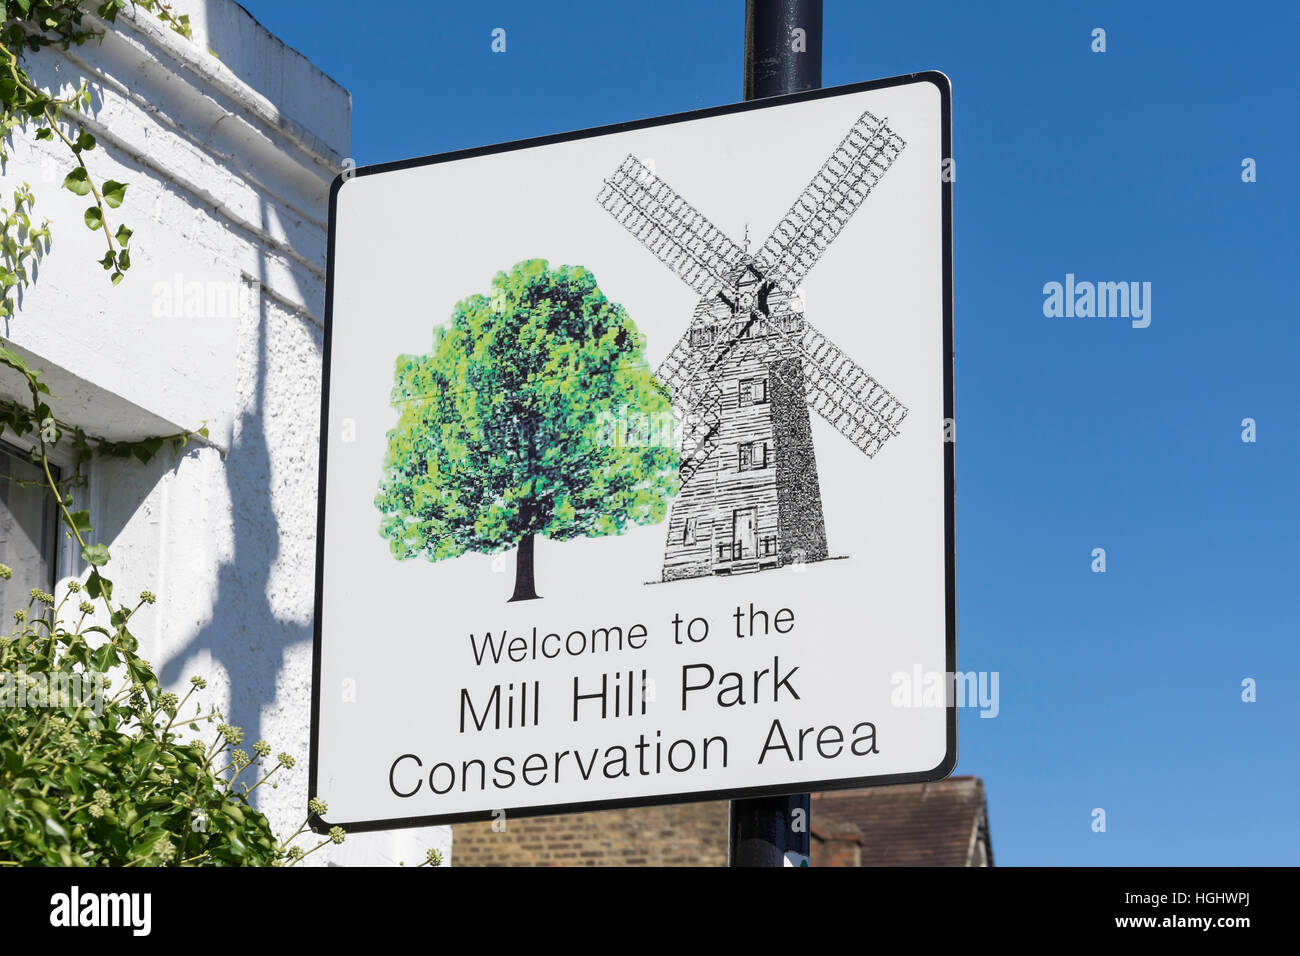 Área de Conservación de Mill Hill, signo Gunnersbury Lane, Acton, London Borough of Ealing, Greater London, England, Reino Unido Foto de stock